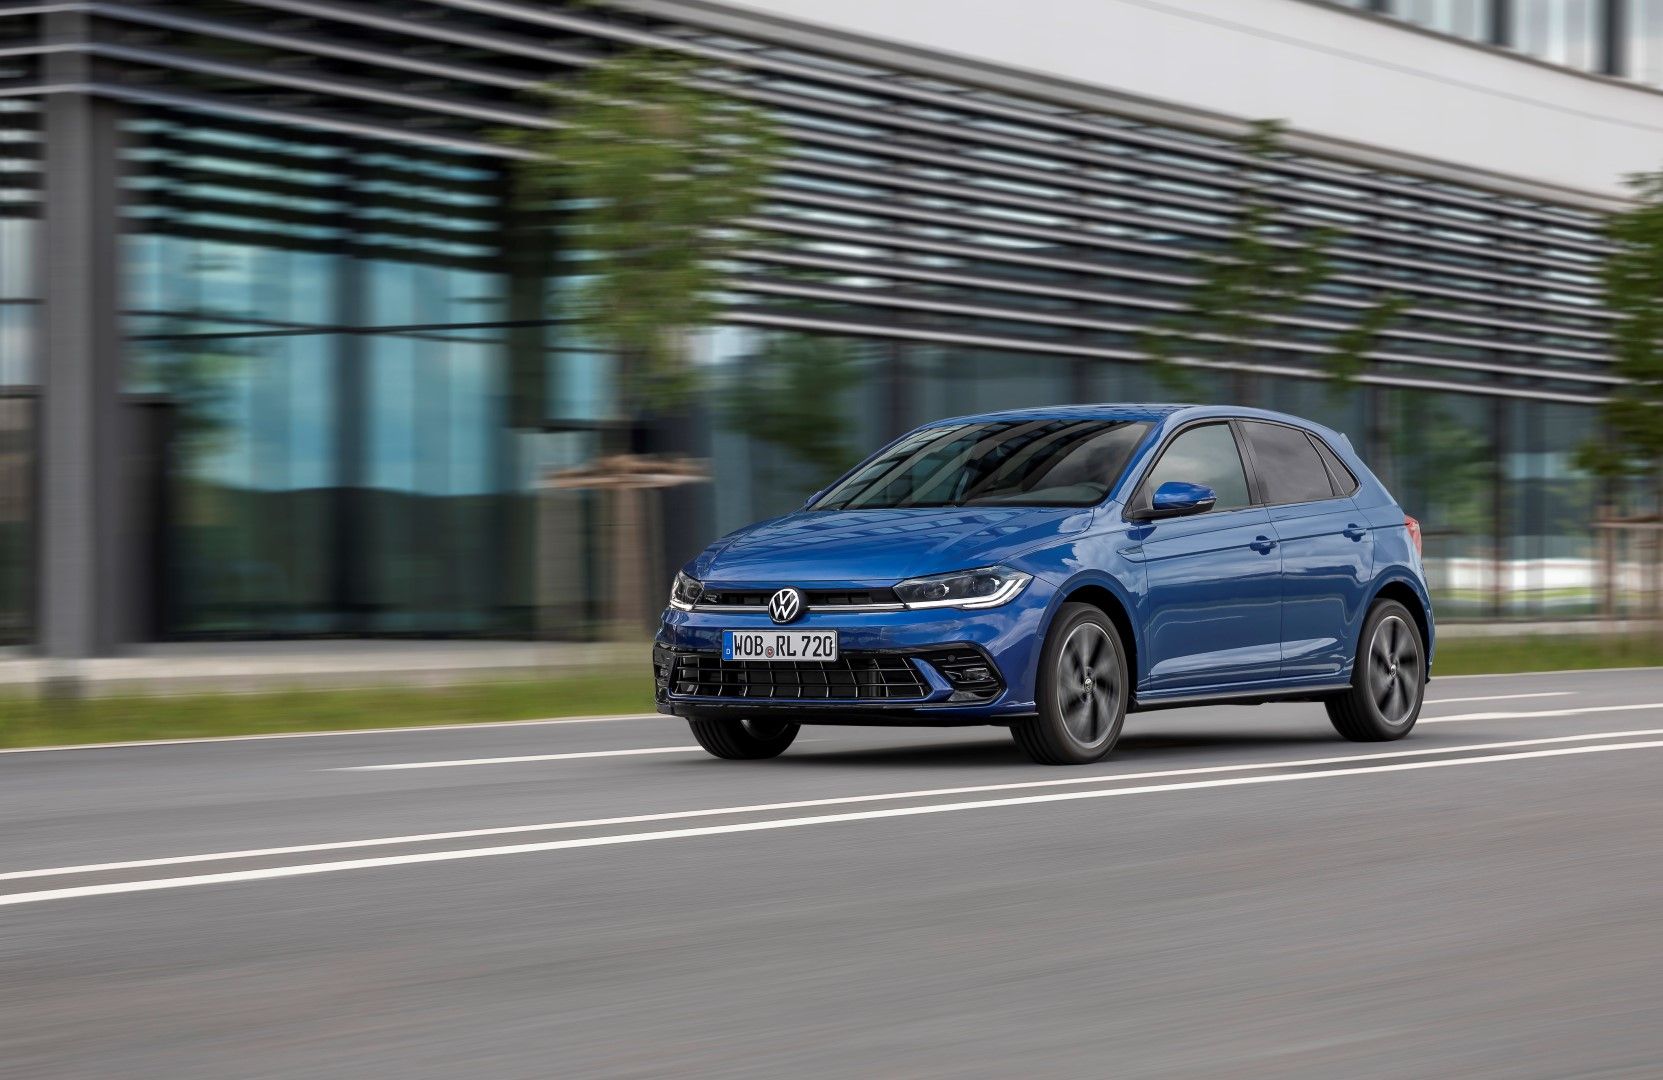 Test Drive || Volkswagen Polo 1.0 TSI 95PS: Η σταθερή αξία